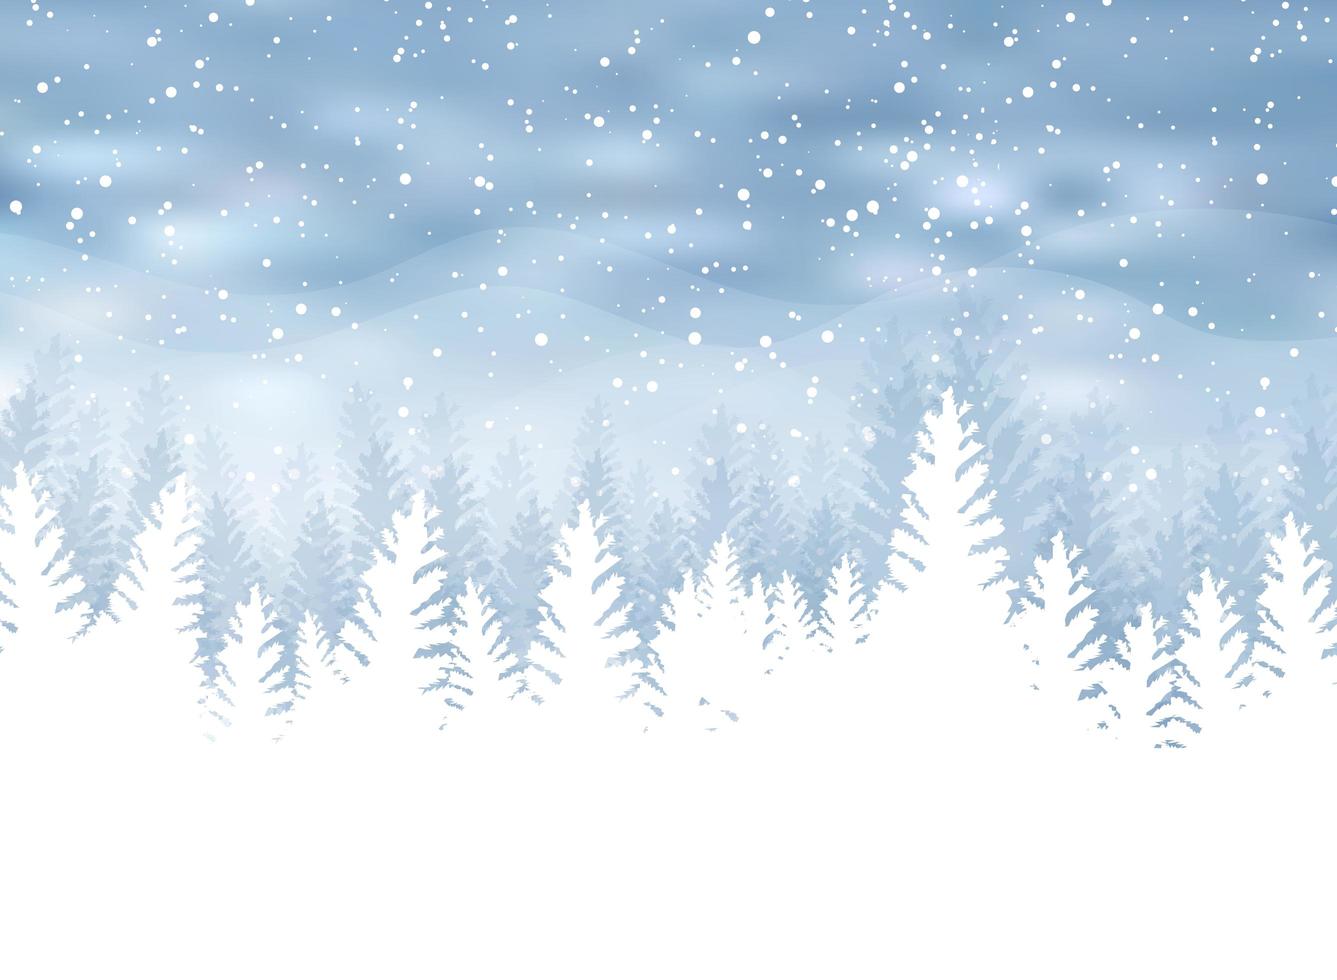 natale inverno su sfondo blu. neve bianca con fiocchi di neve su argento brillante luce. albero di Natale. vettore